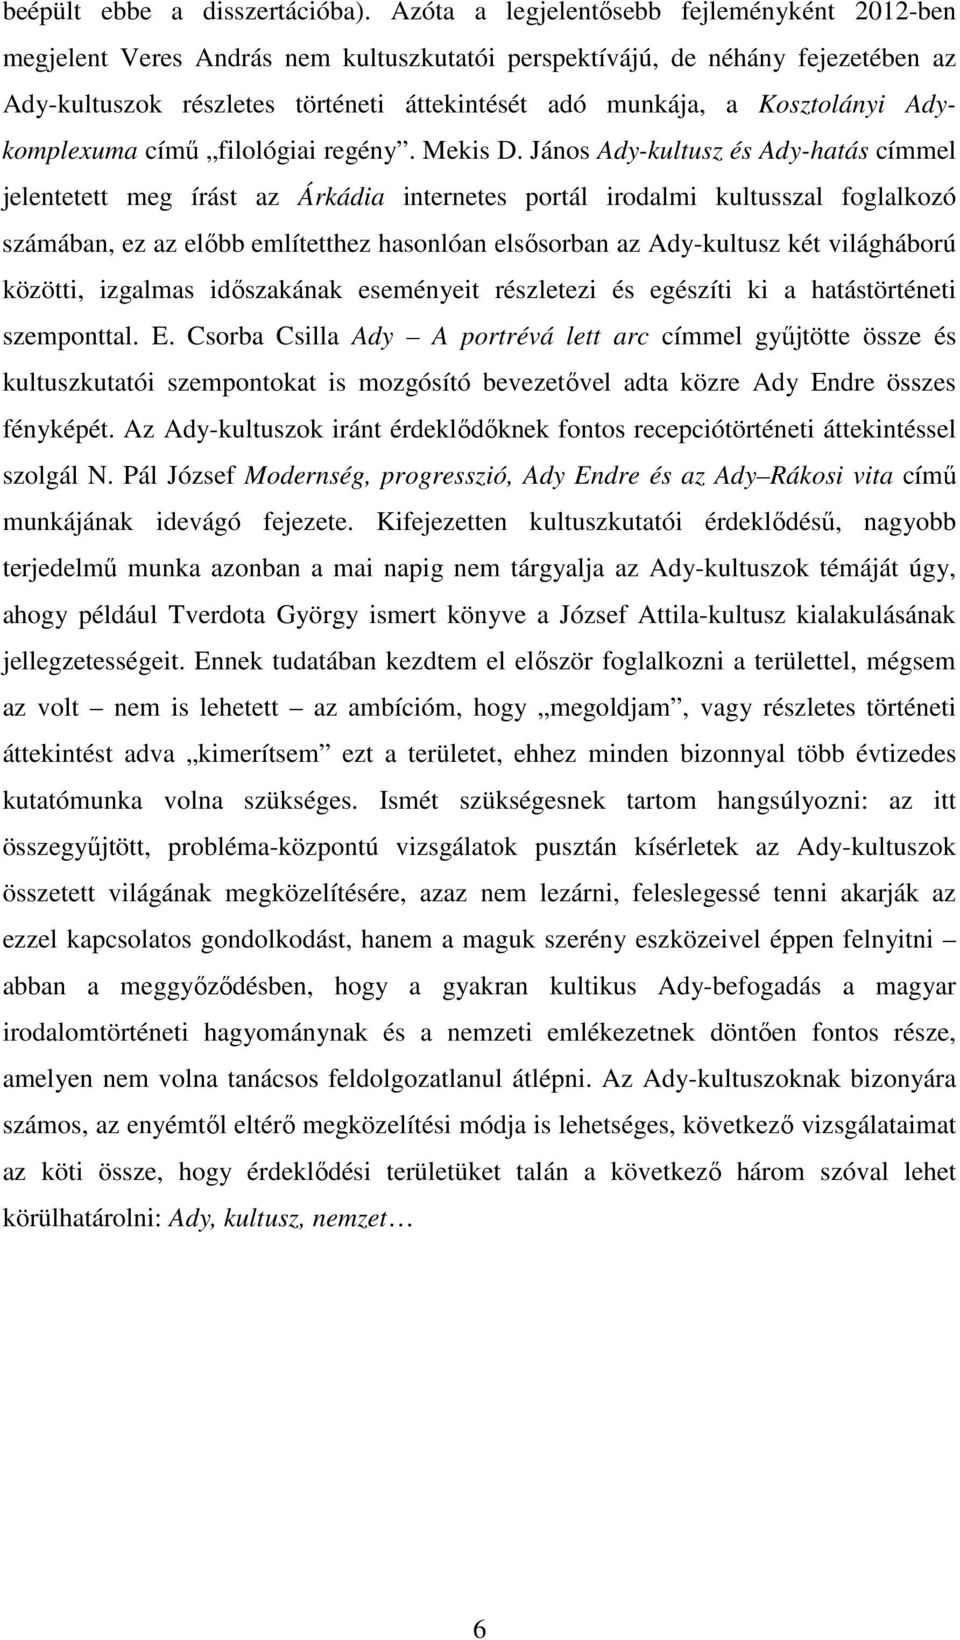 Kosztolányi Adykomplexuma című filológiai regény. Mekis D.